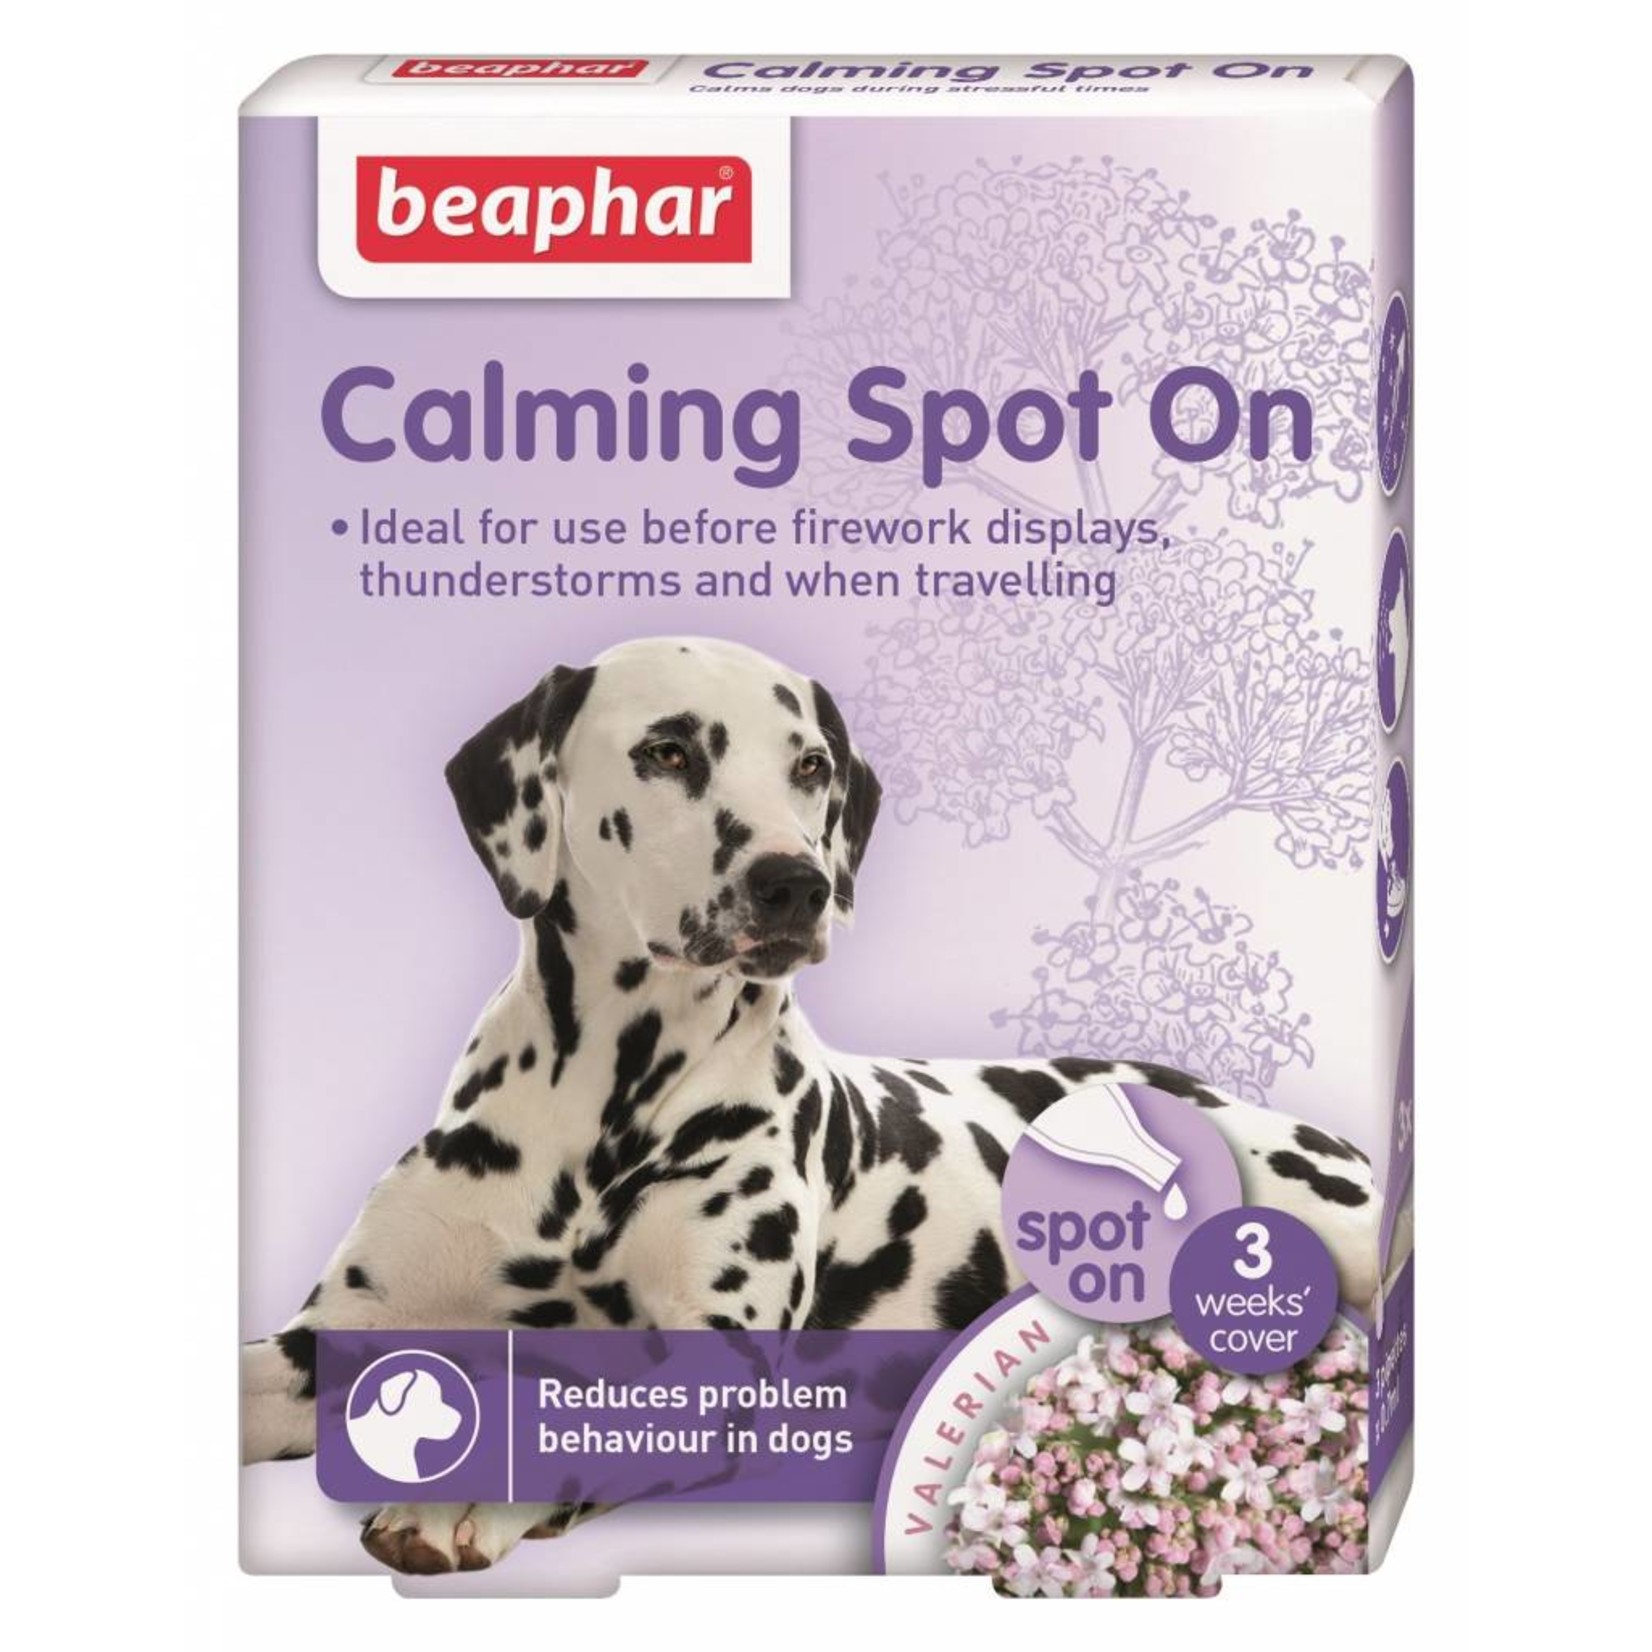 Beaphar Calming Spot On for Dogs